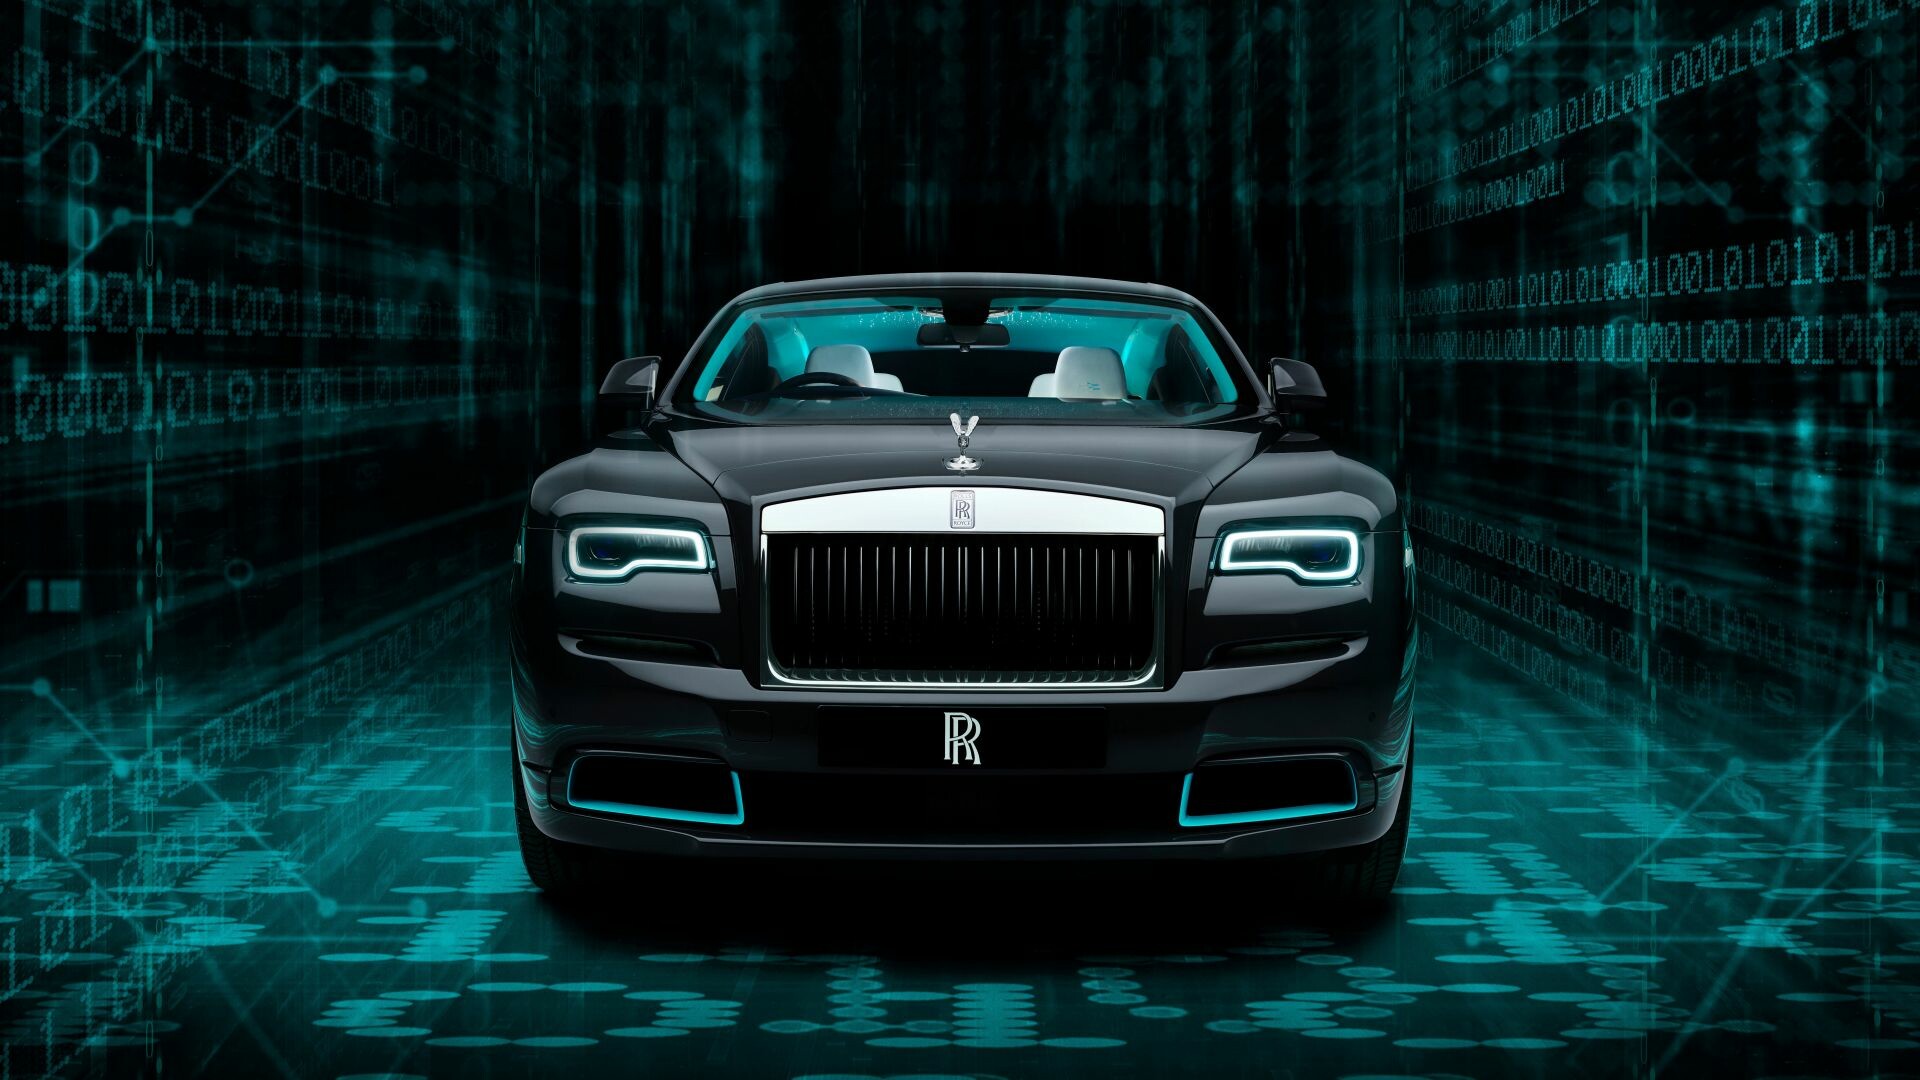 Rolls-Royce Wraith 2020, Luxury black car, 1920x1080 Full HD Desktop